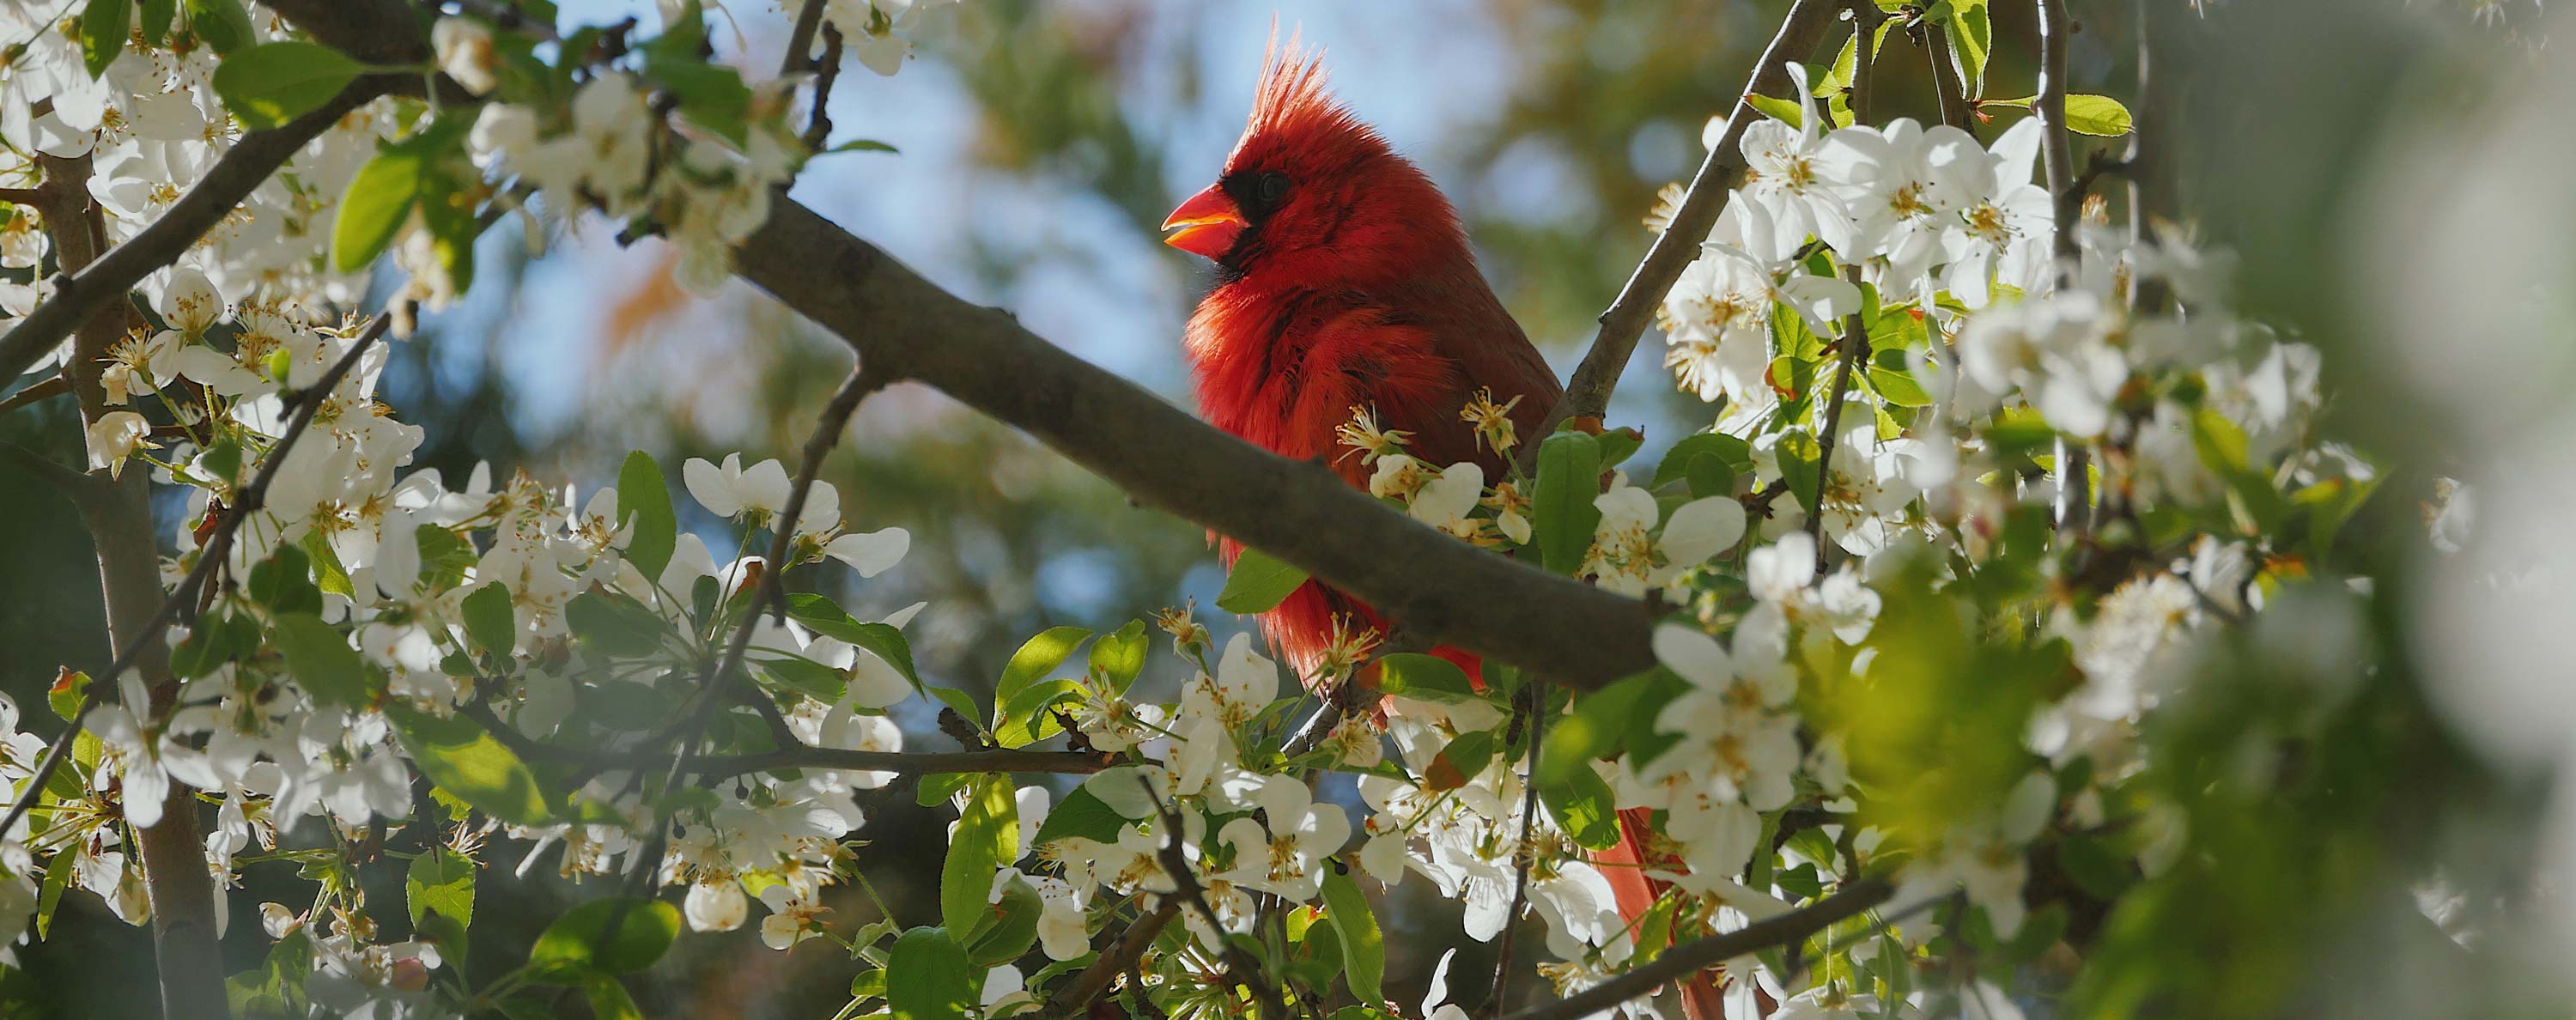 Cardinal. Photo by Kyle Johnston on Unsplash.